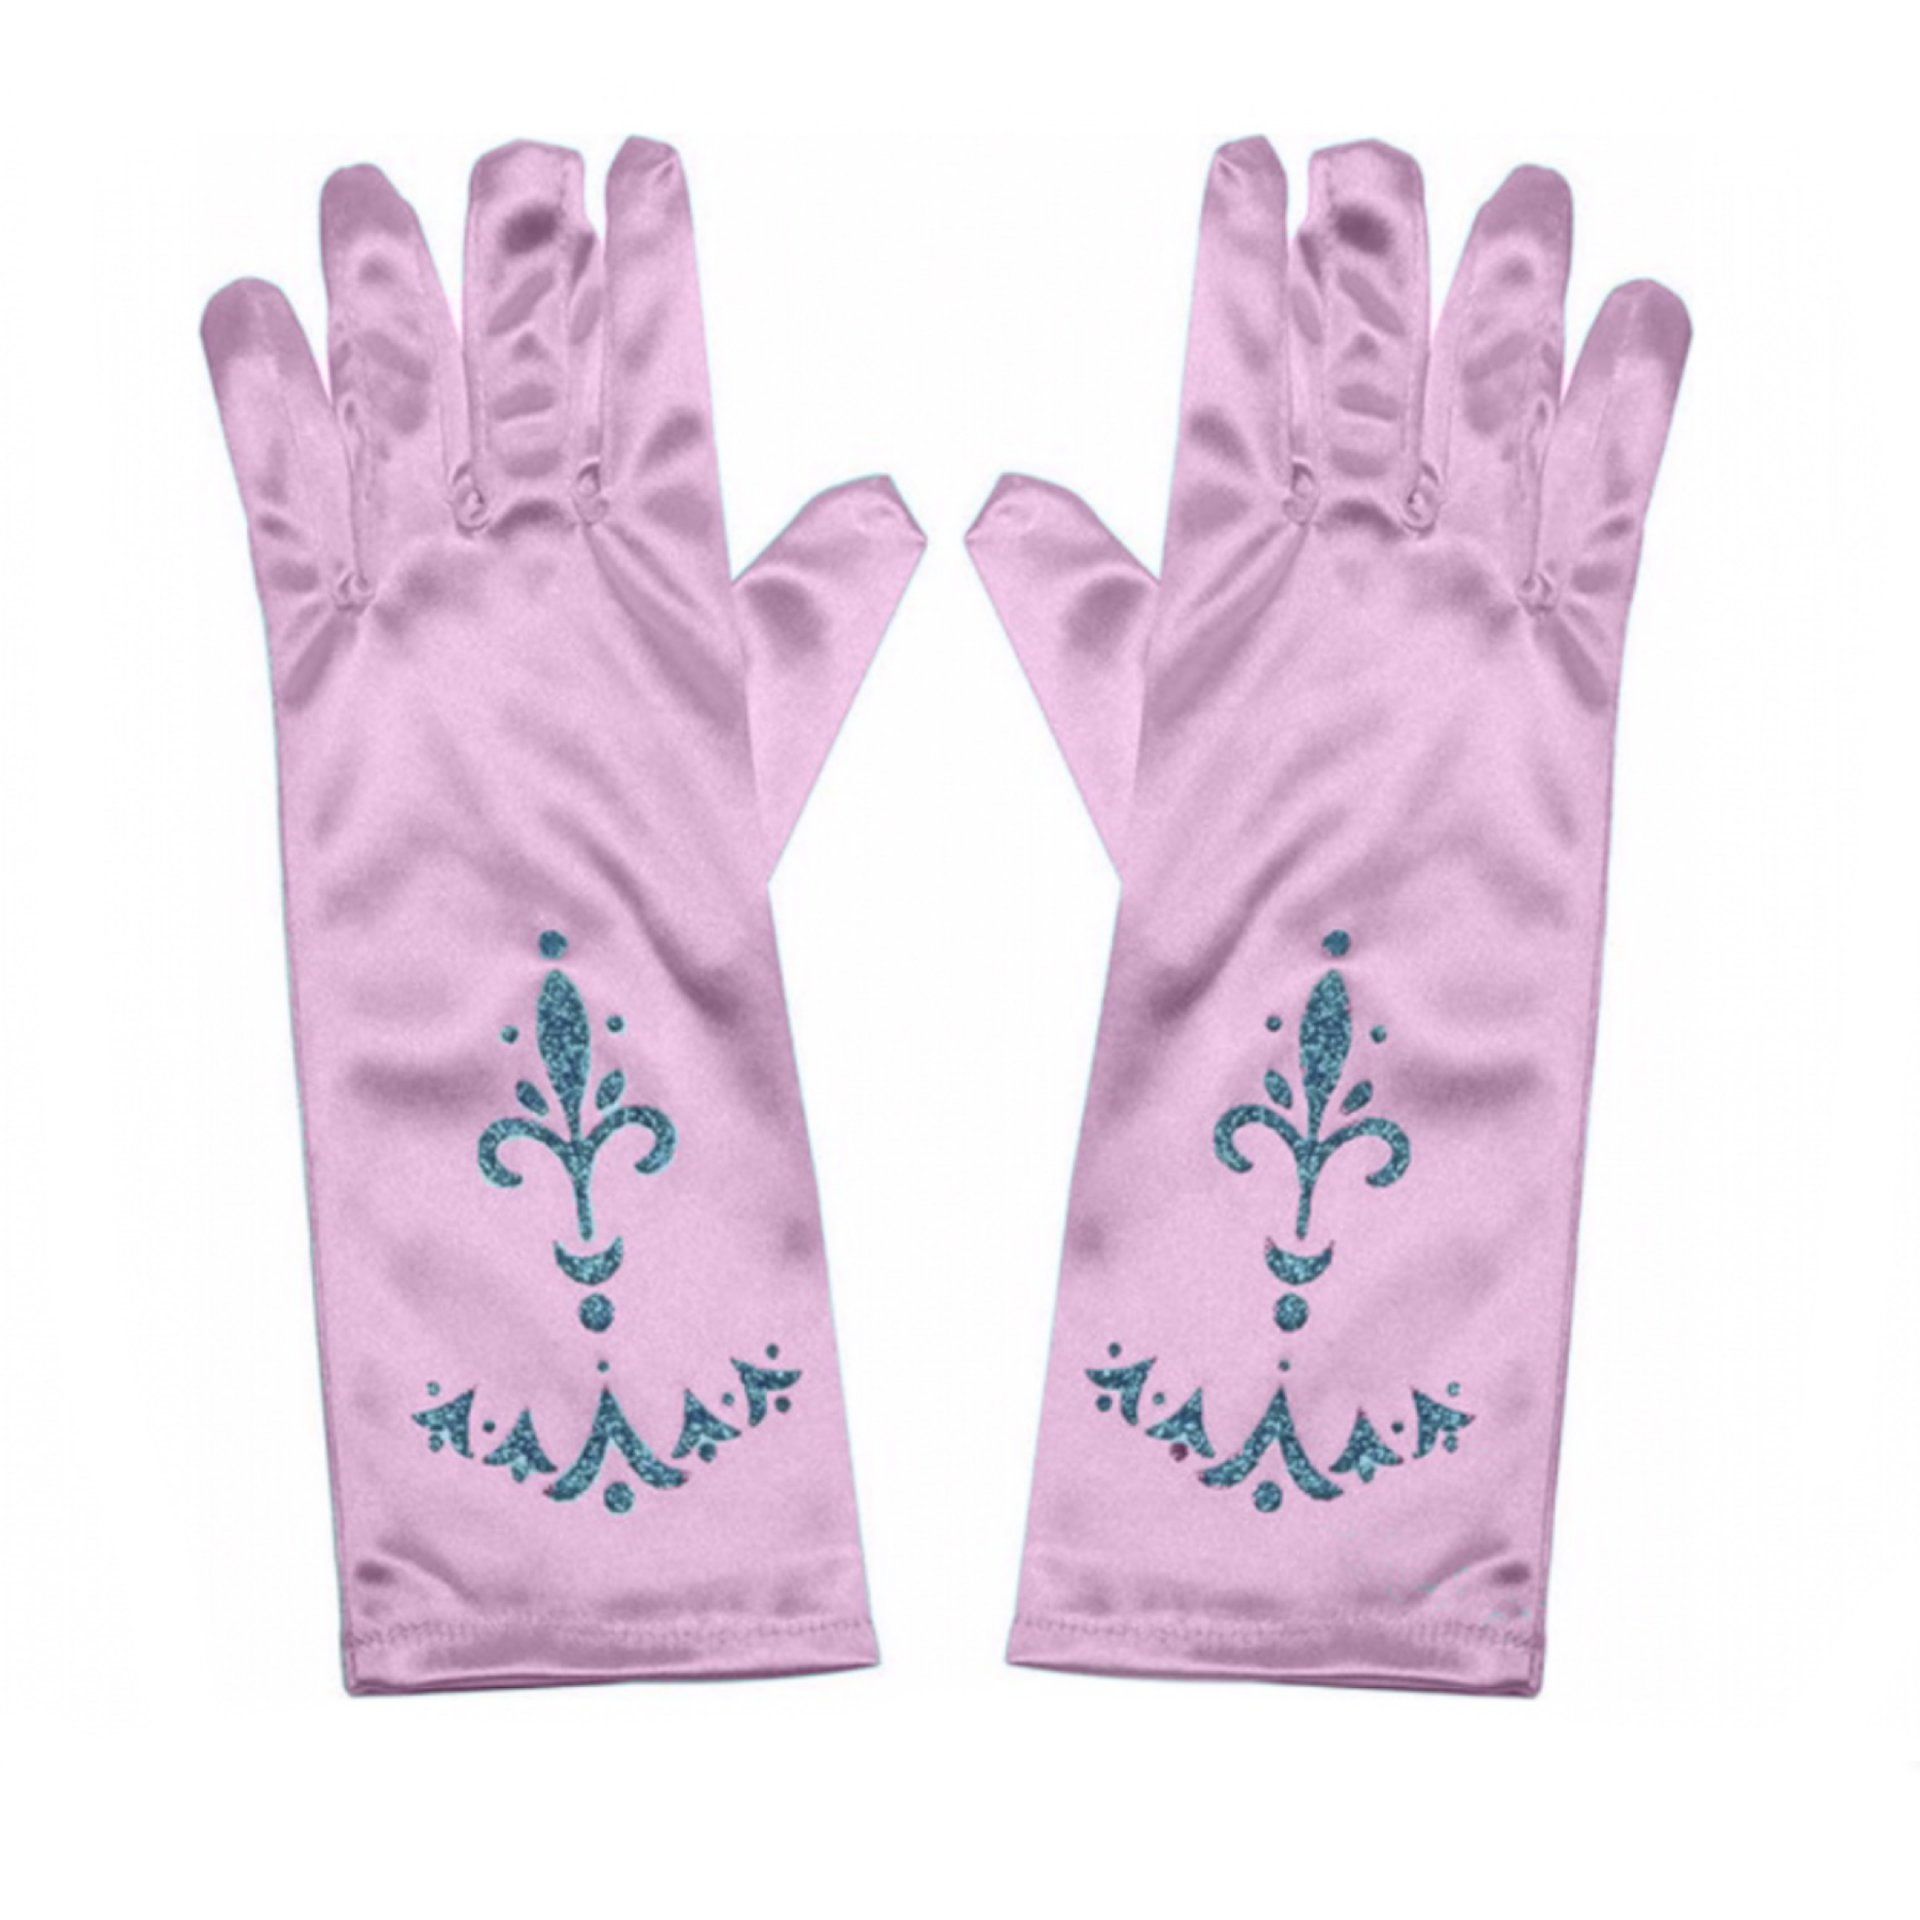 Echt Momentum luchthaven Prinsessen handschoenen - roze - Het Betere Merk